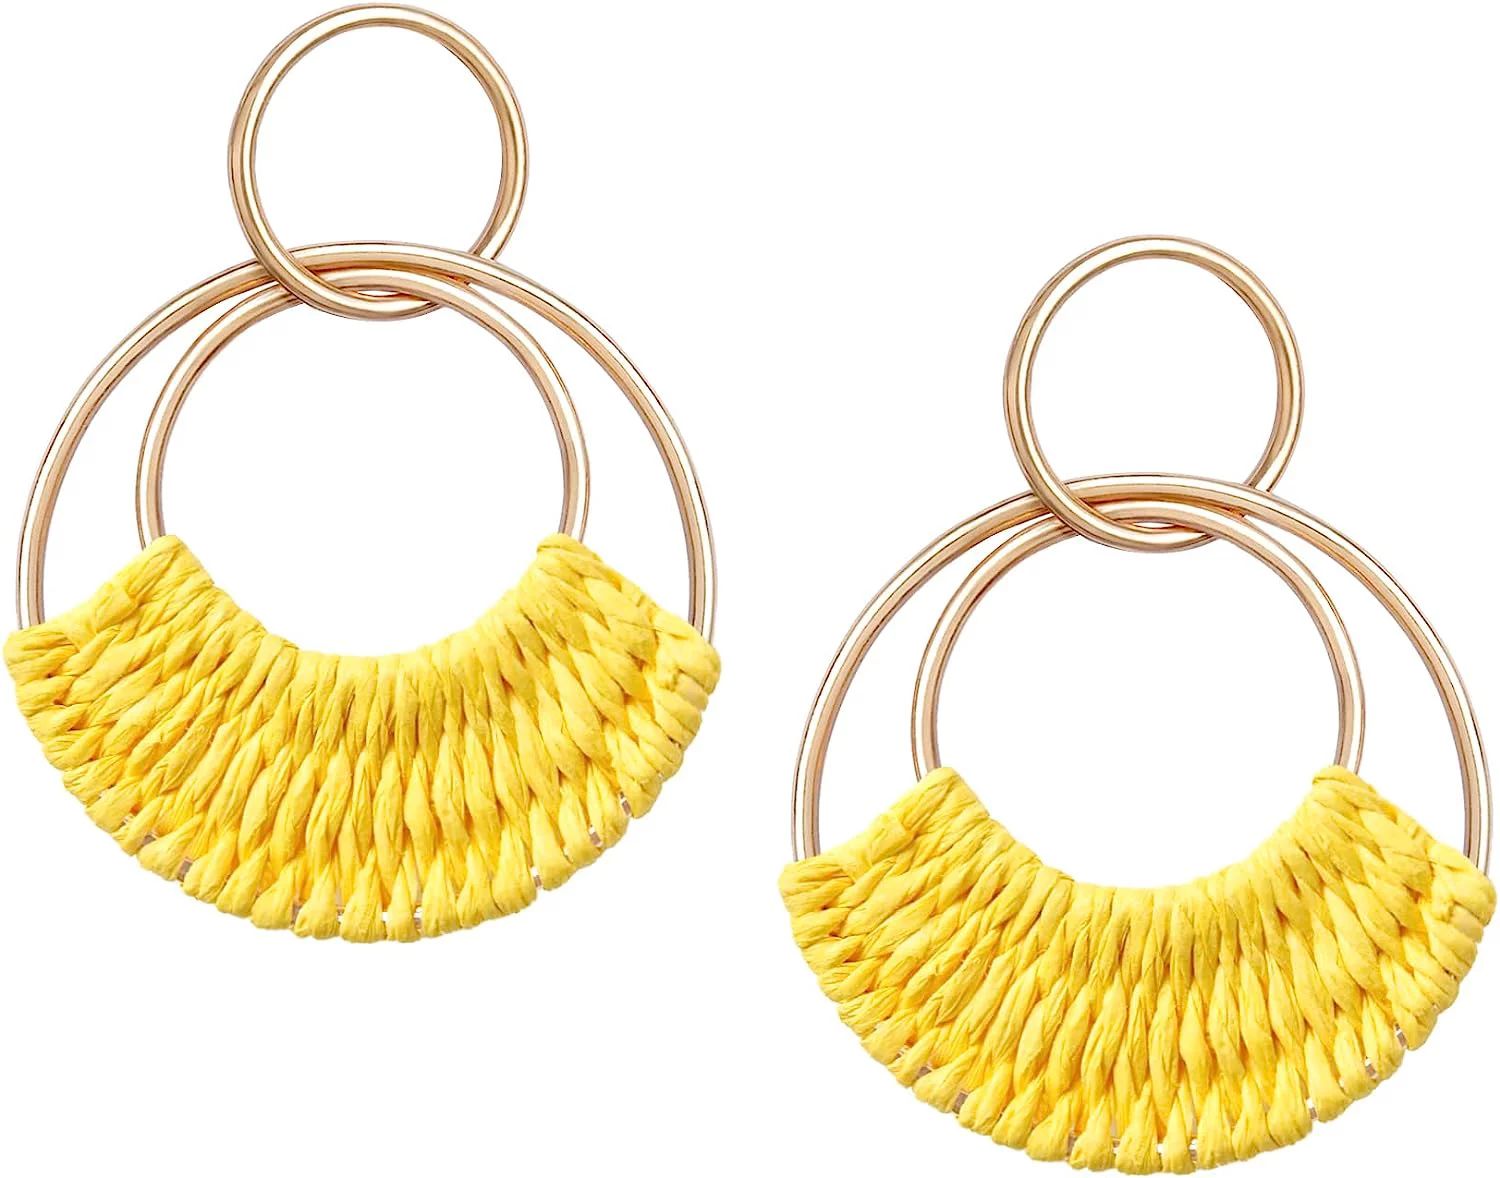 Raffia Hoop Earrings for Women Girls Fun Boho Summer Beach Earrings Lightweight Handmade Straw Wi... | Walmart (US)